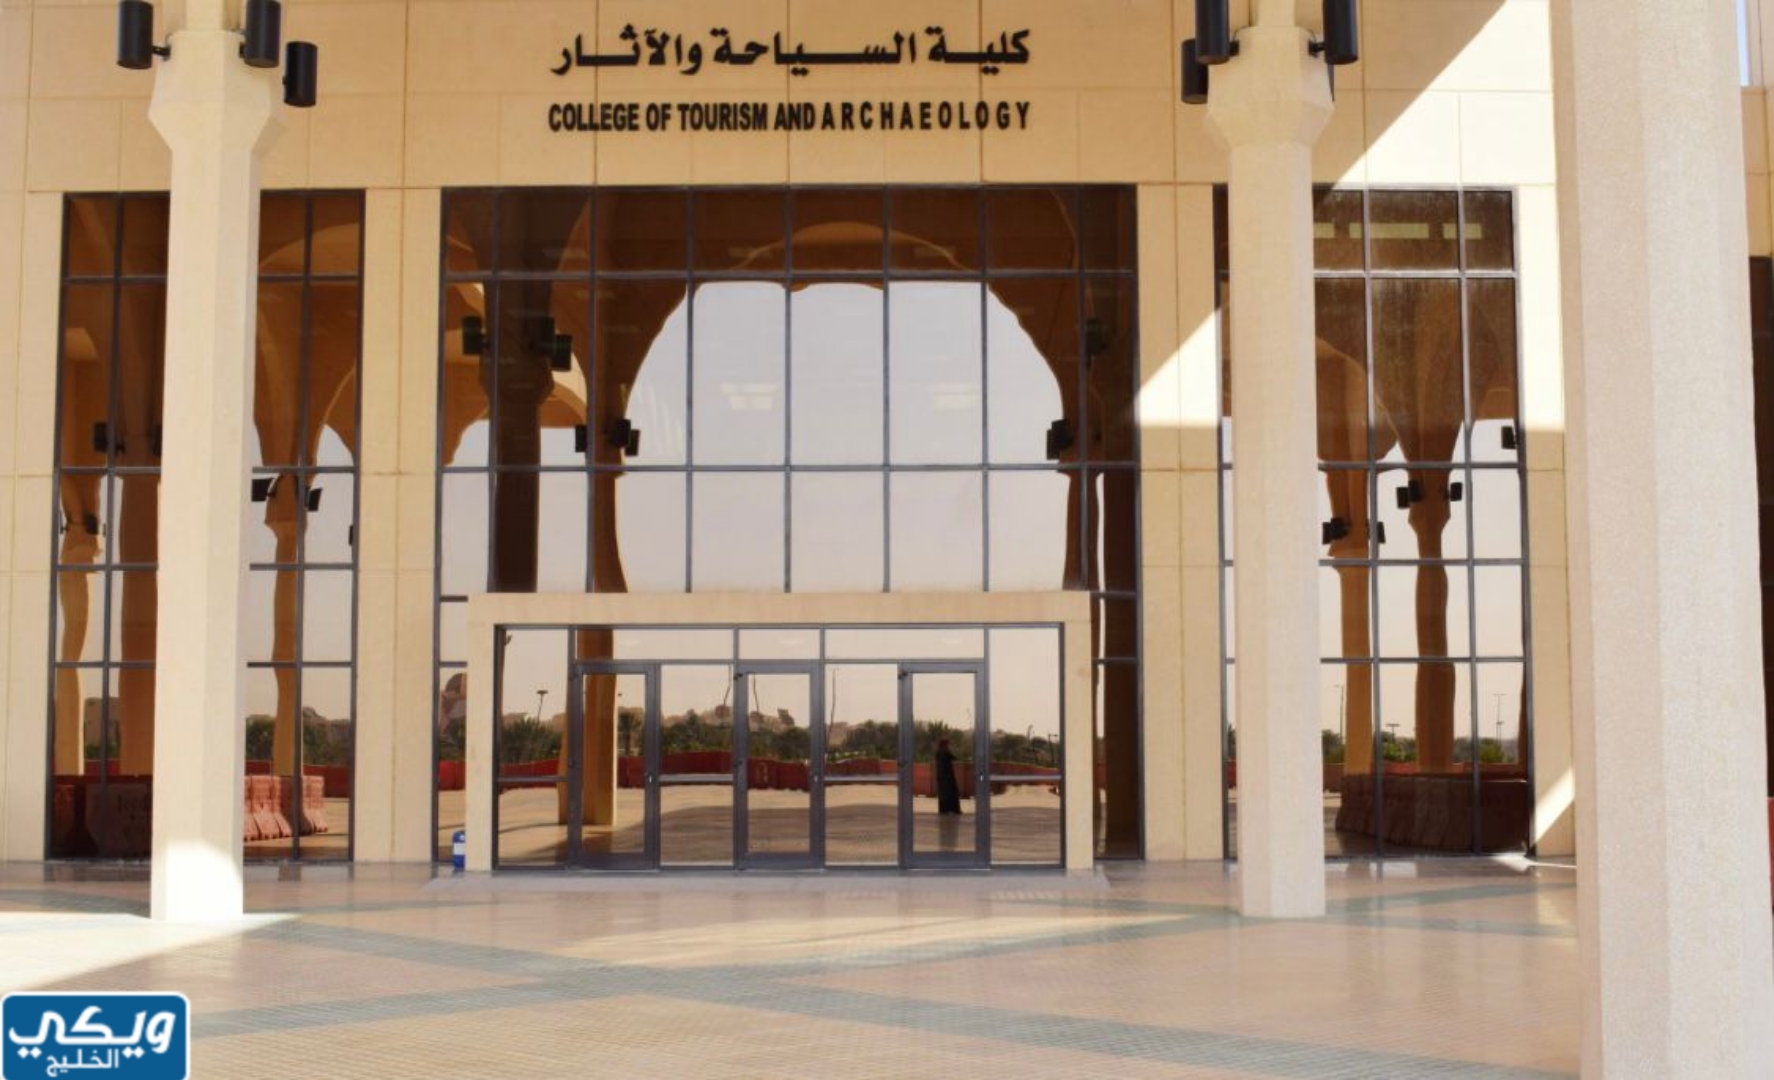 كلية السياحة والآثار في جامعةِ الملكِ سعود